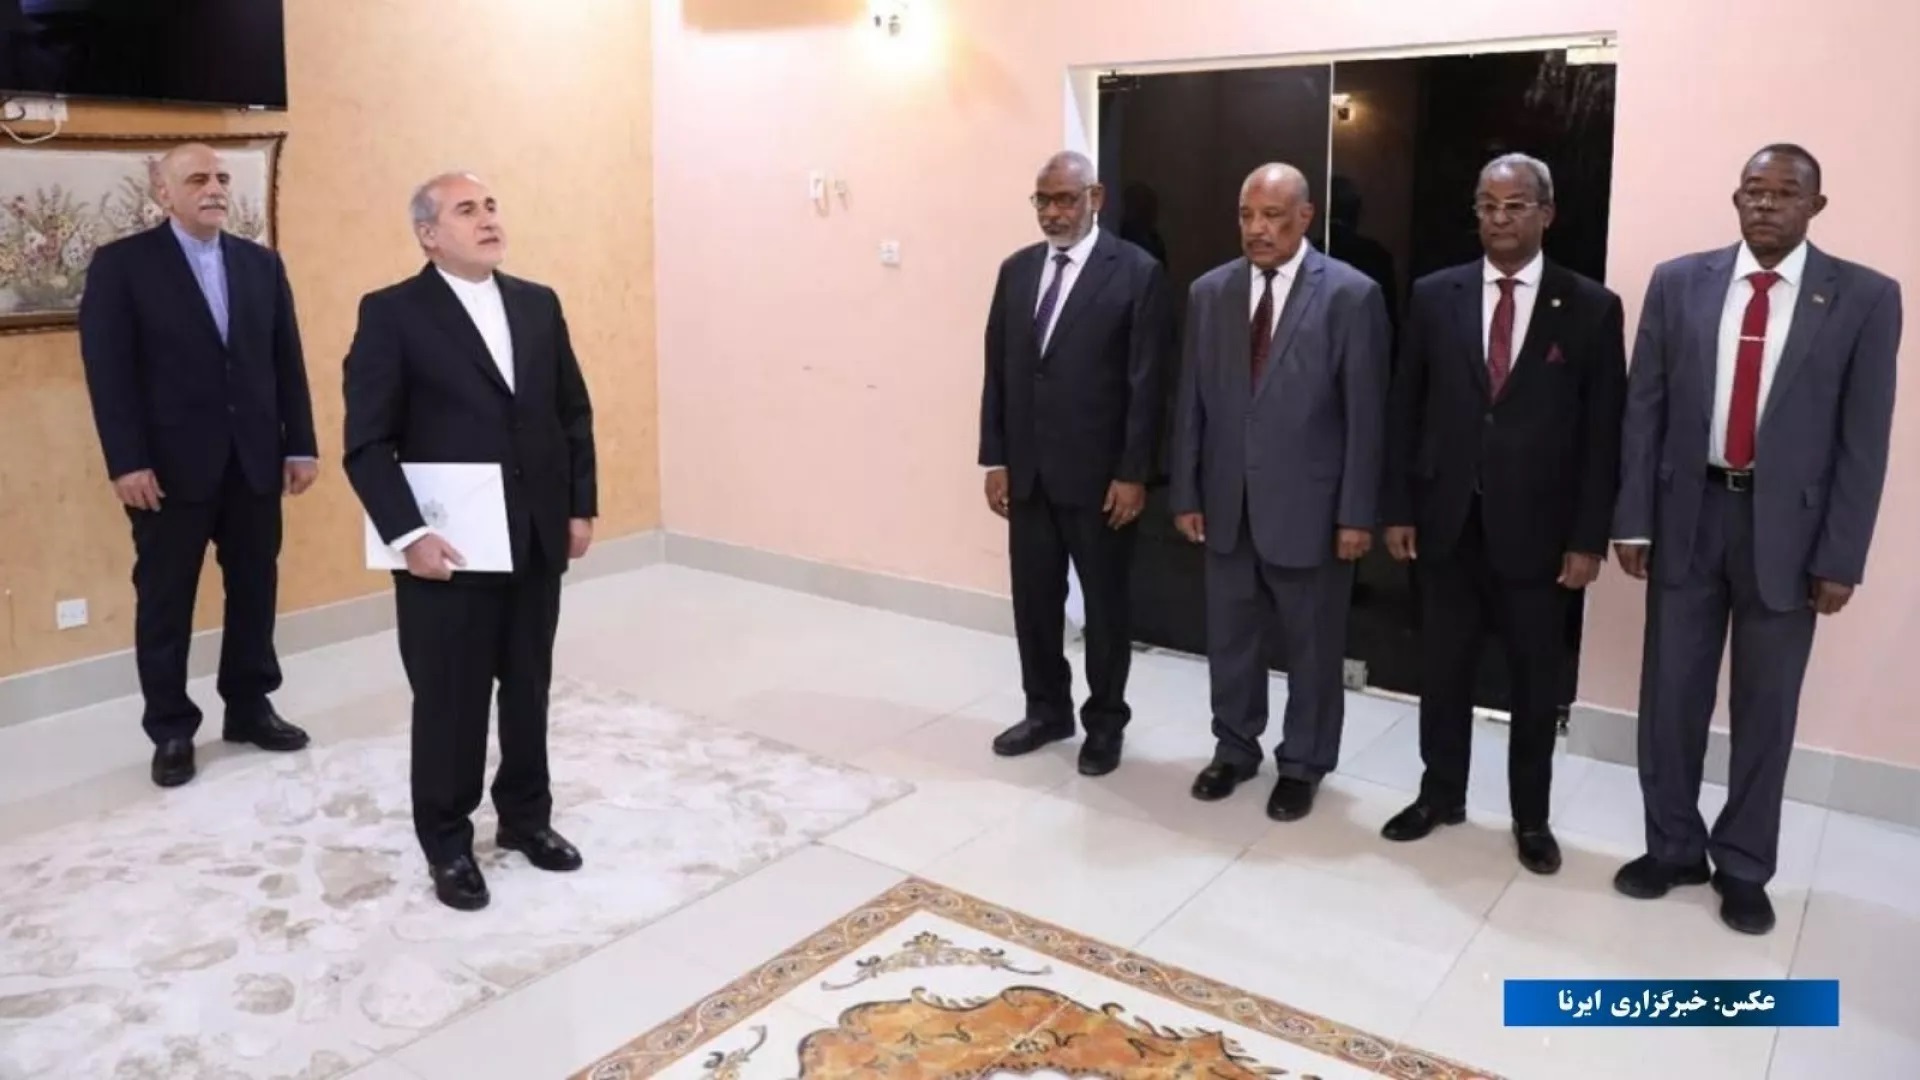 تبادل سفیر میان ایران و سودان پس از هشت سال قطع روابط دیپلماتیک